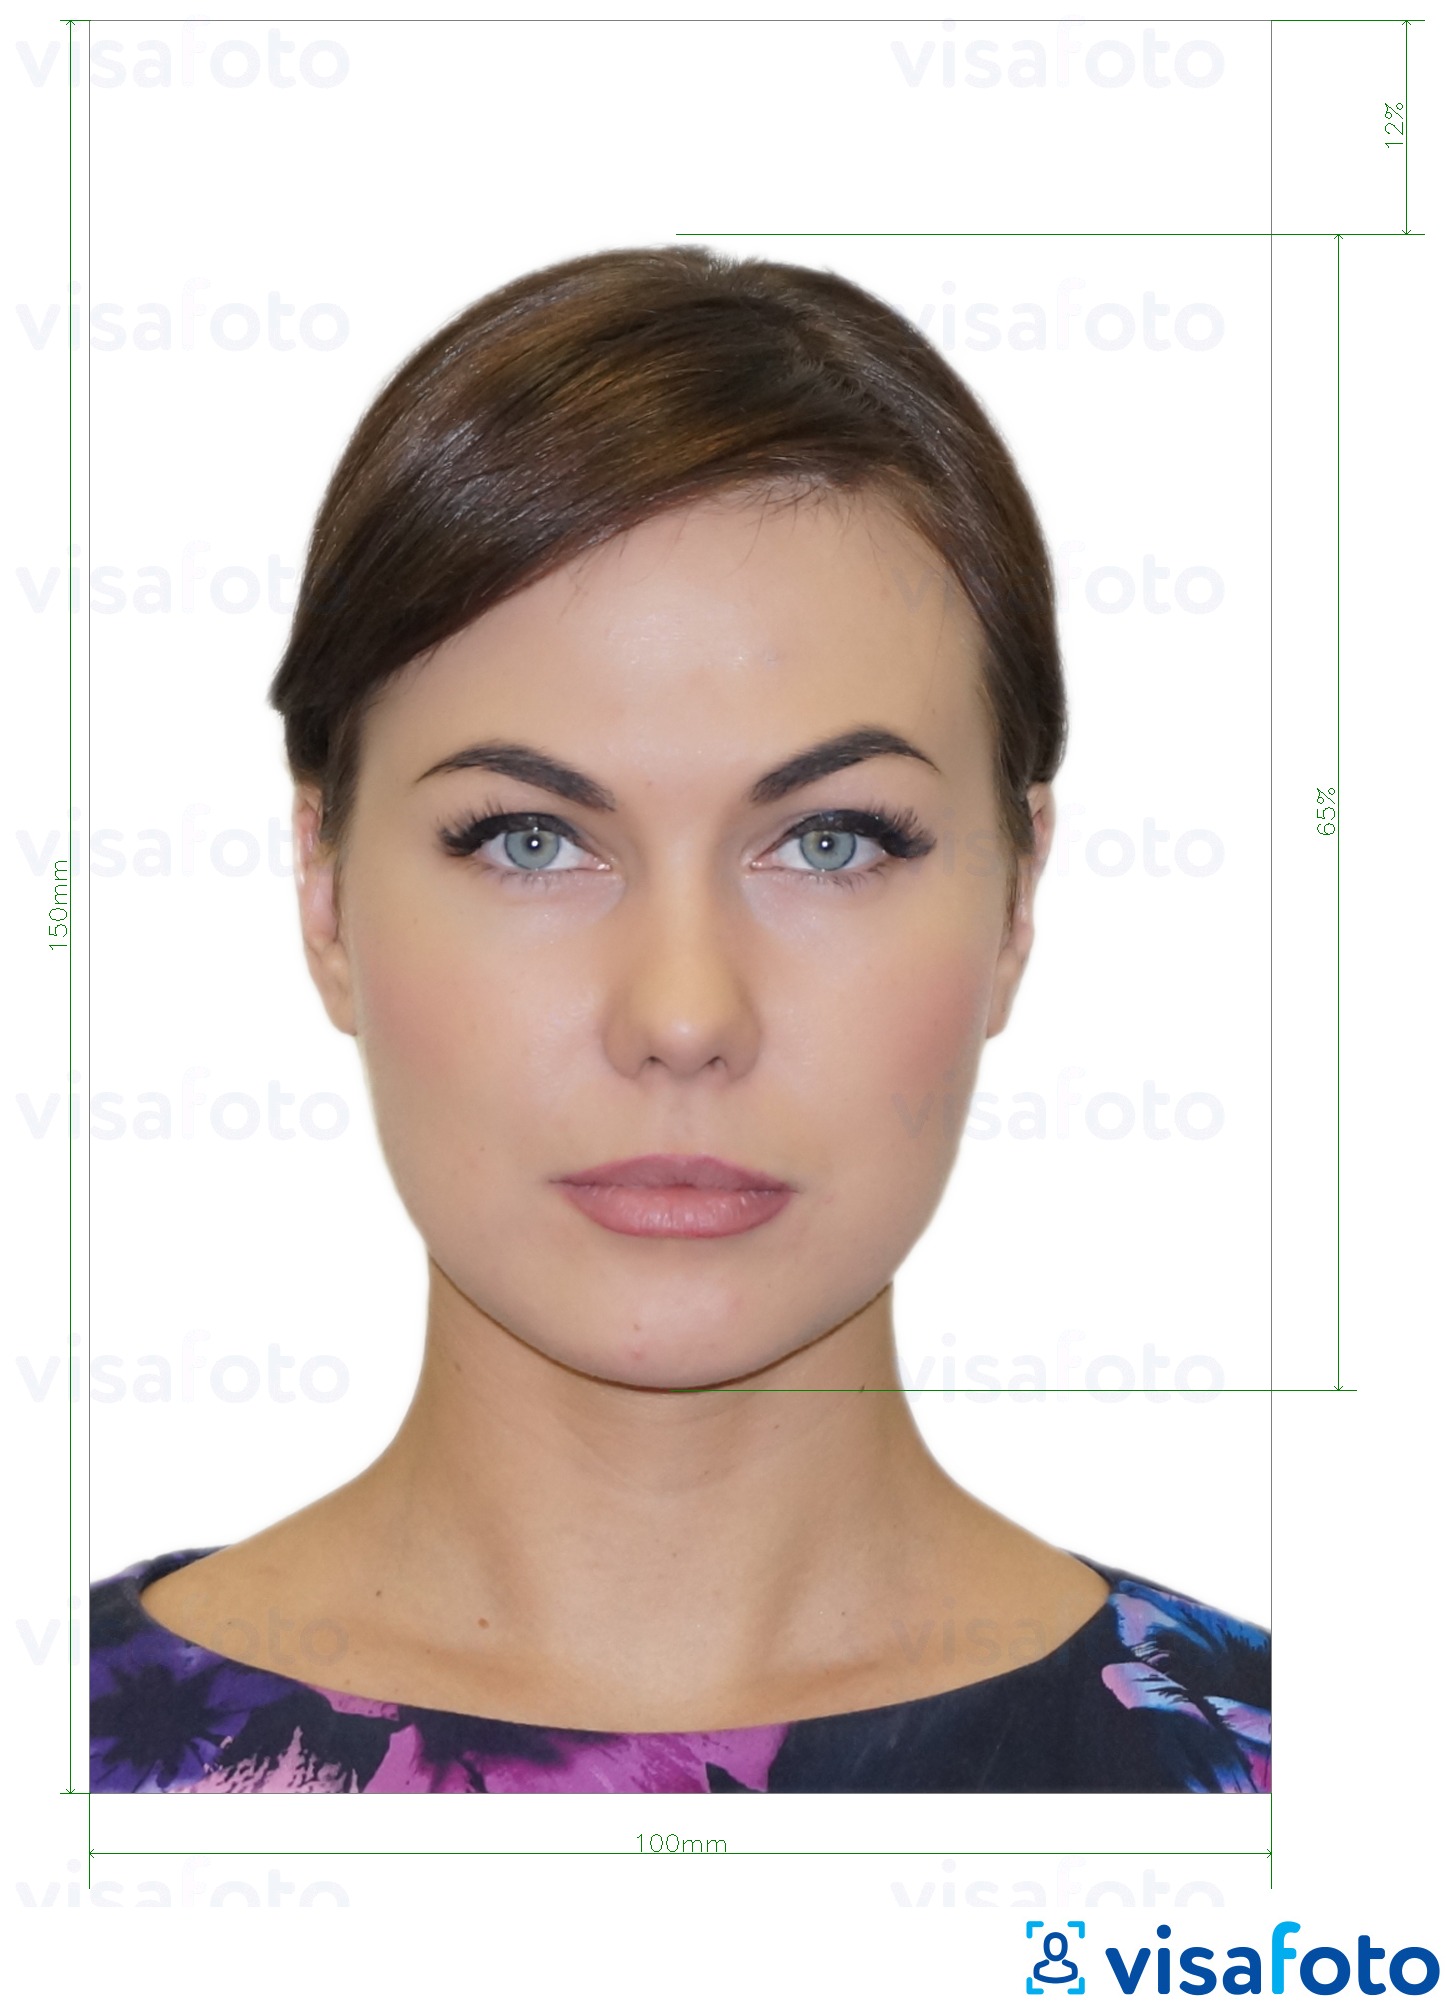 דוגמא לתמונה על מולדובה תעודת זהות (עלון זיהוי) 10x15 ס